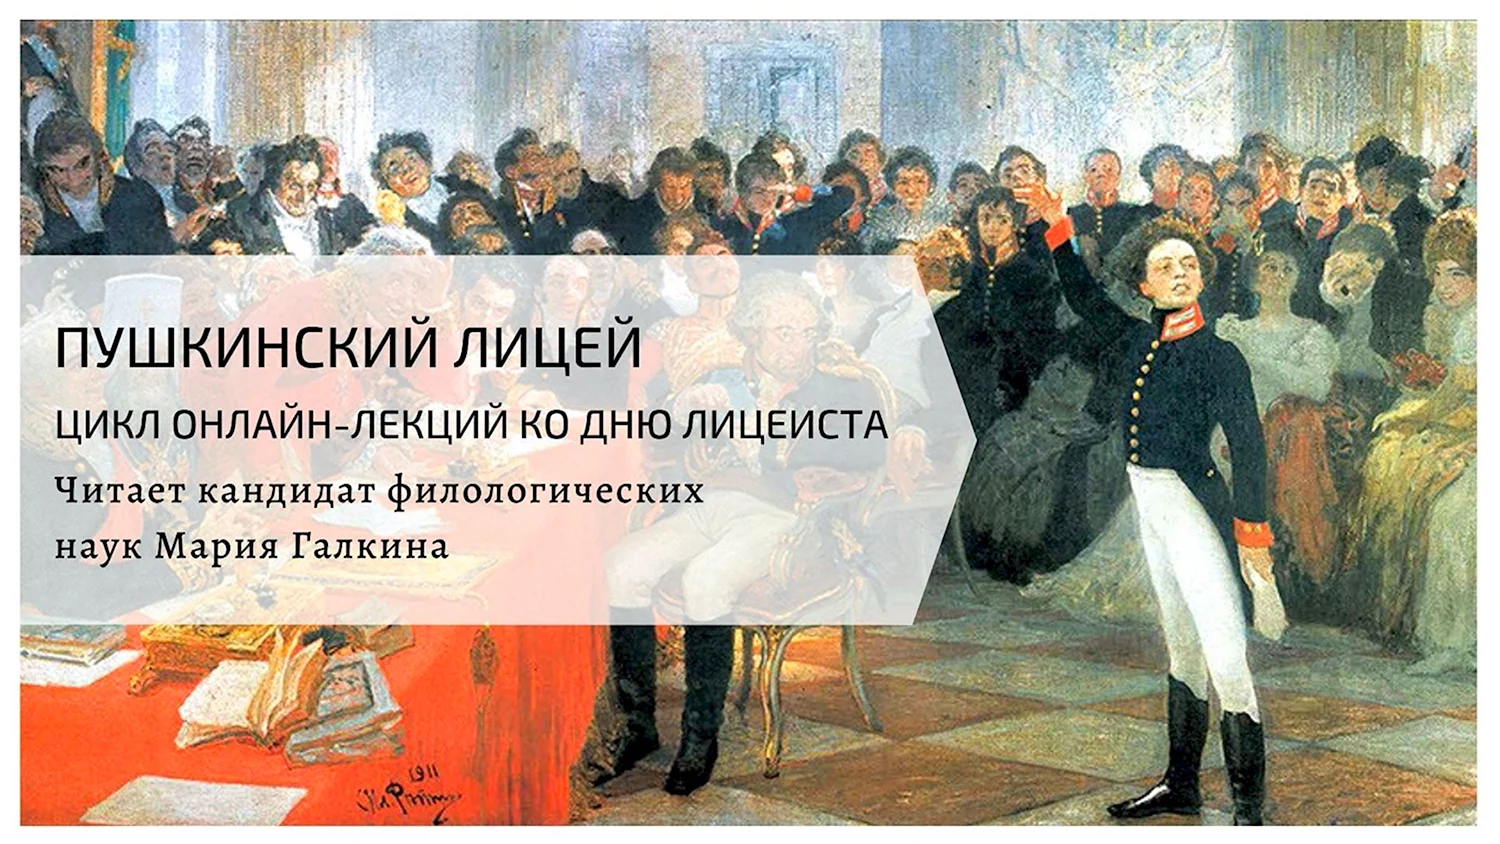 Лицеисты Царскосельского лицея Пушкинского выпуска портреты